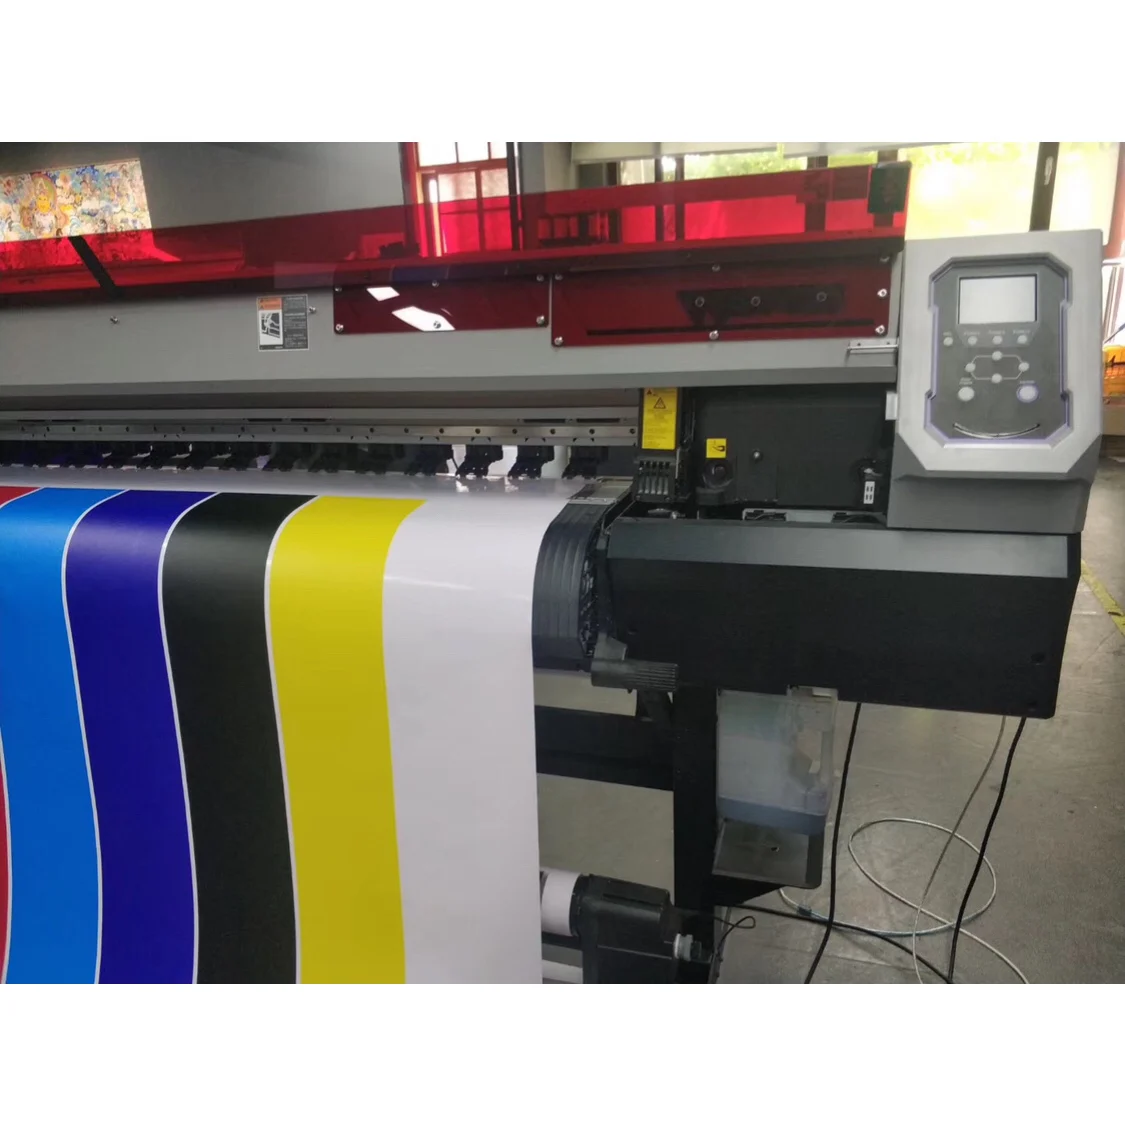 UJV100-160, Mimaki UJV100-160 - 64in UV Printer, Printers, UV Curable,  wide-format, inkjet printer- LexJet - Inkjet Printers, Media, Ink  Cartridges and More